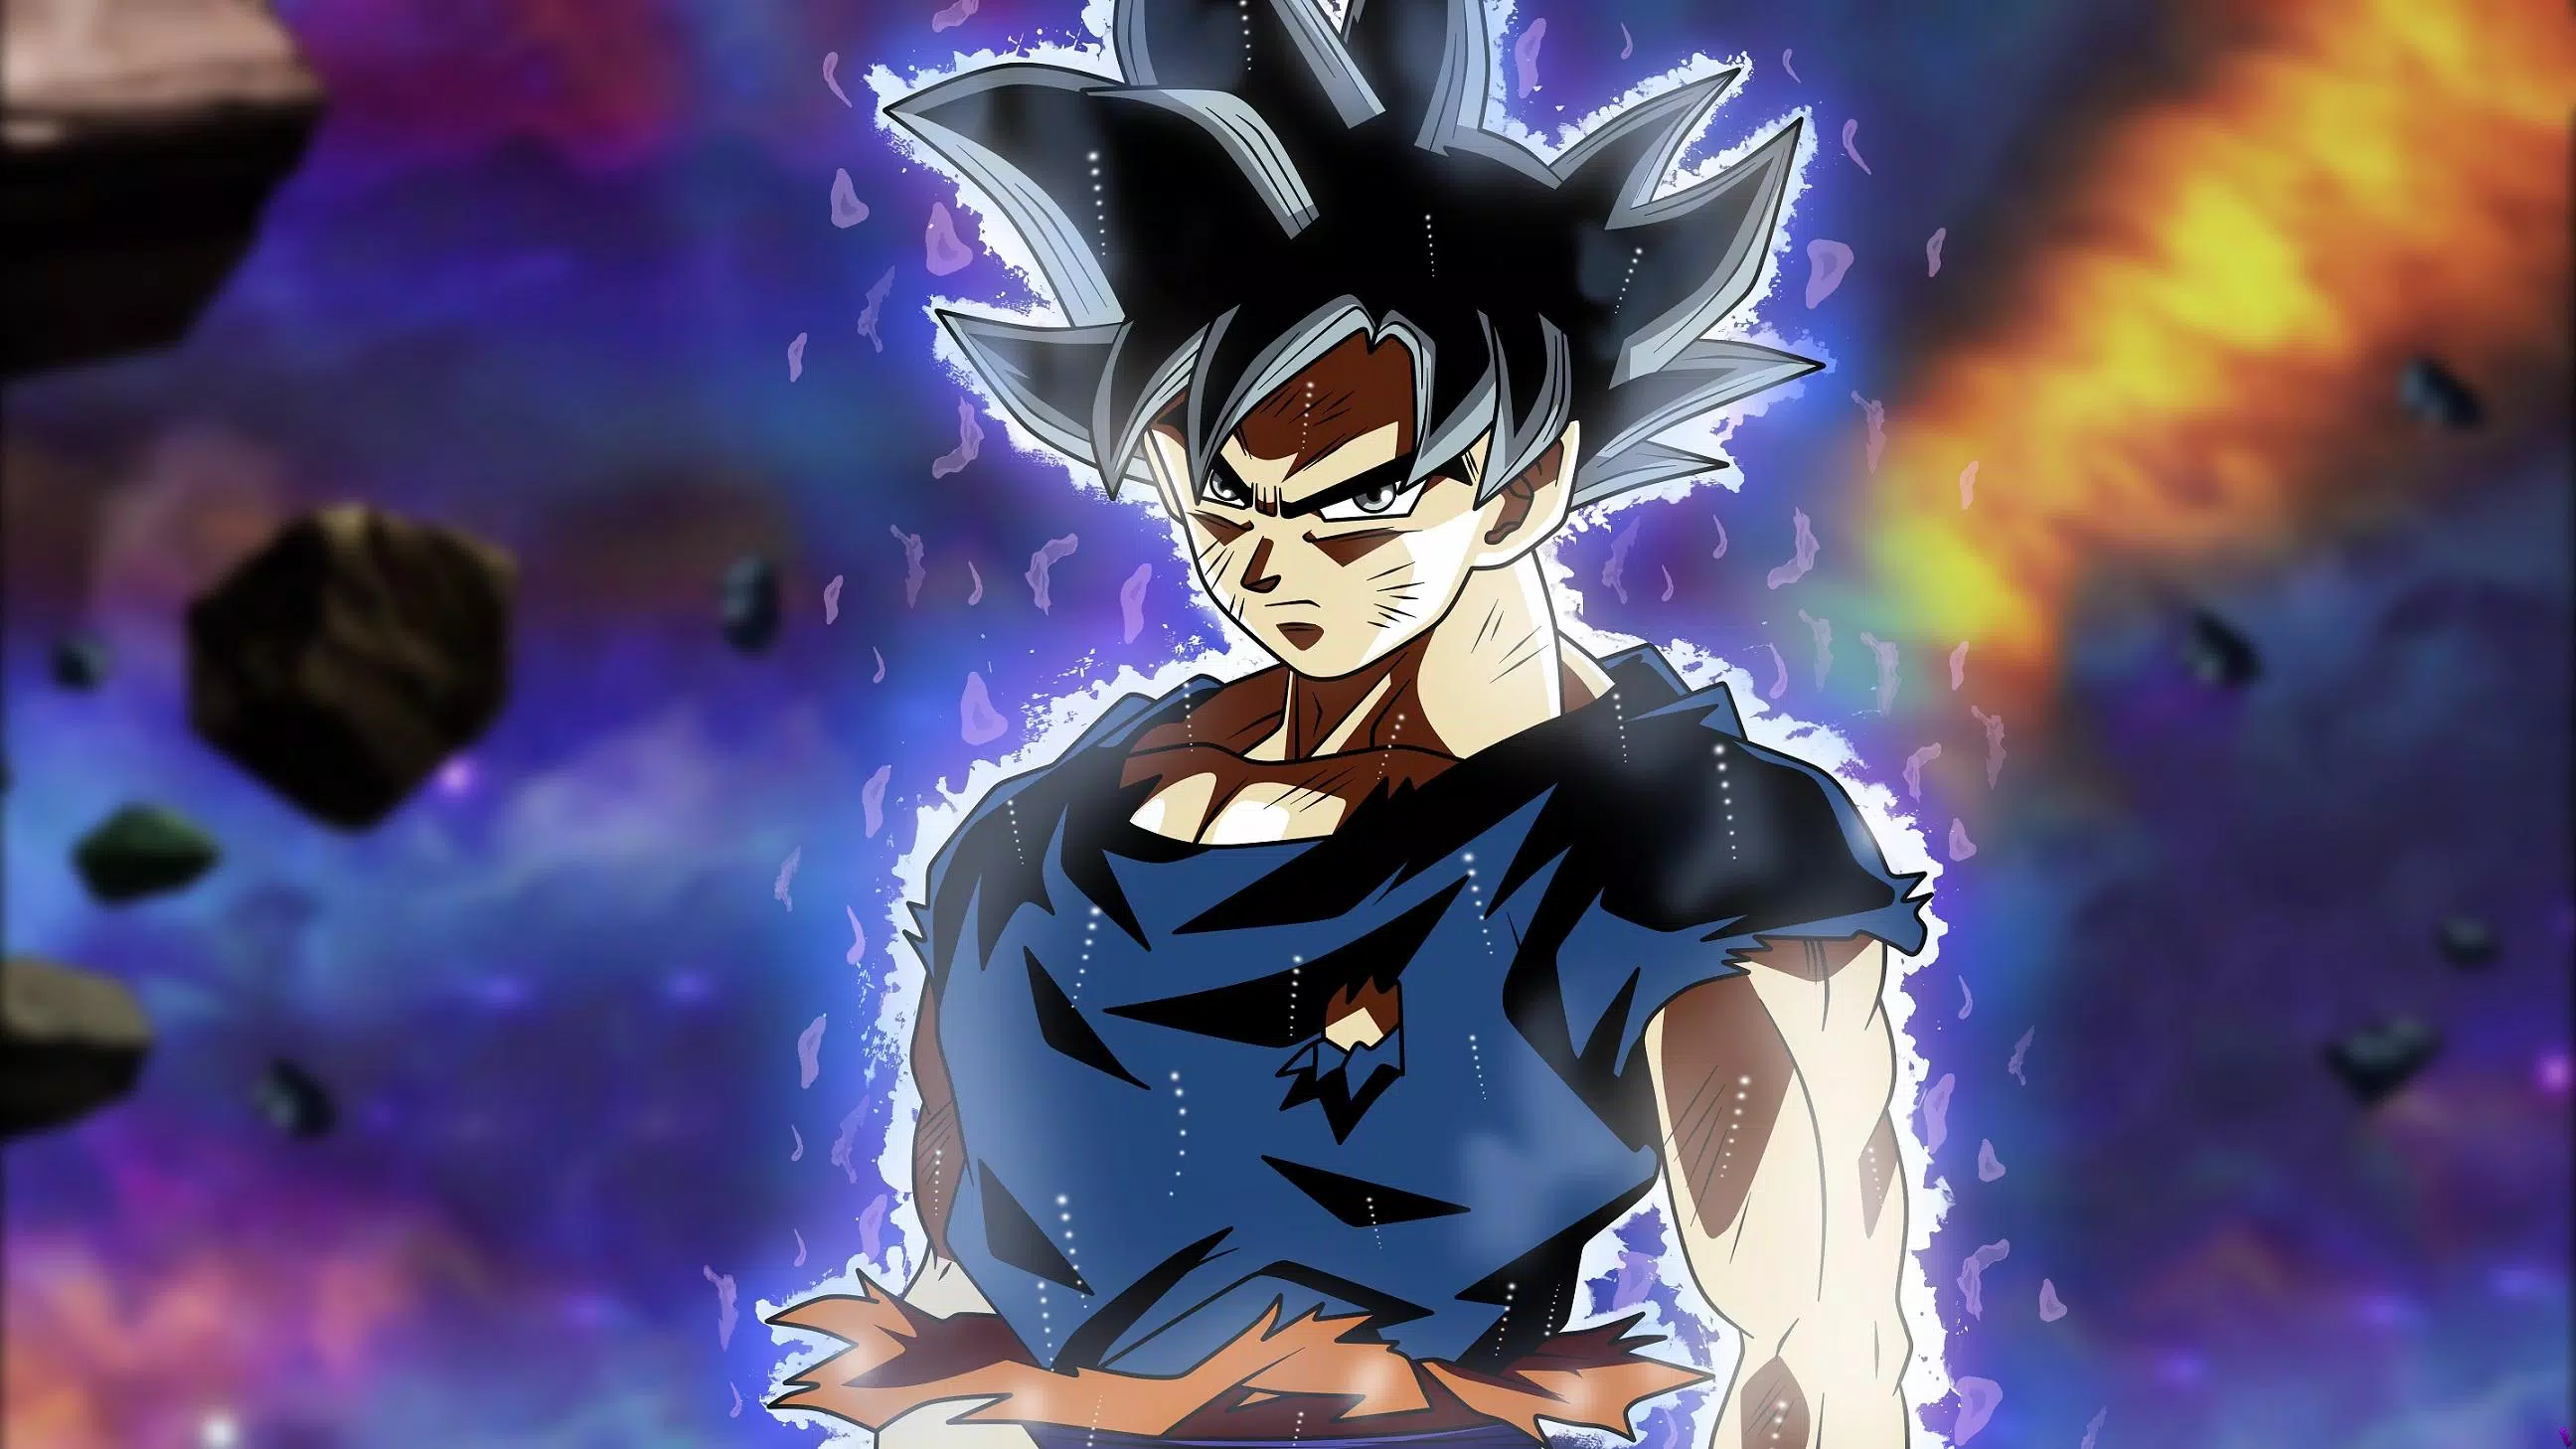 Hình Nền Goku Hd: Goku, Vegeta, Ngọc Rồng, 4K Cho Android - Tải Về Apk